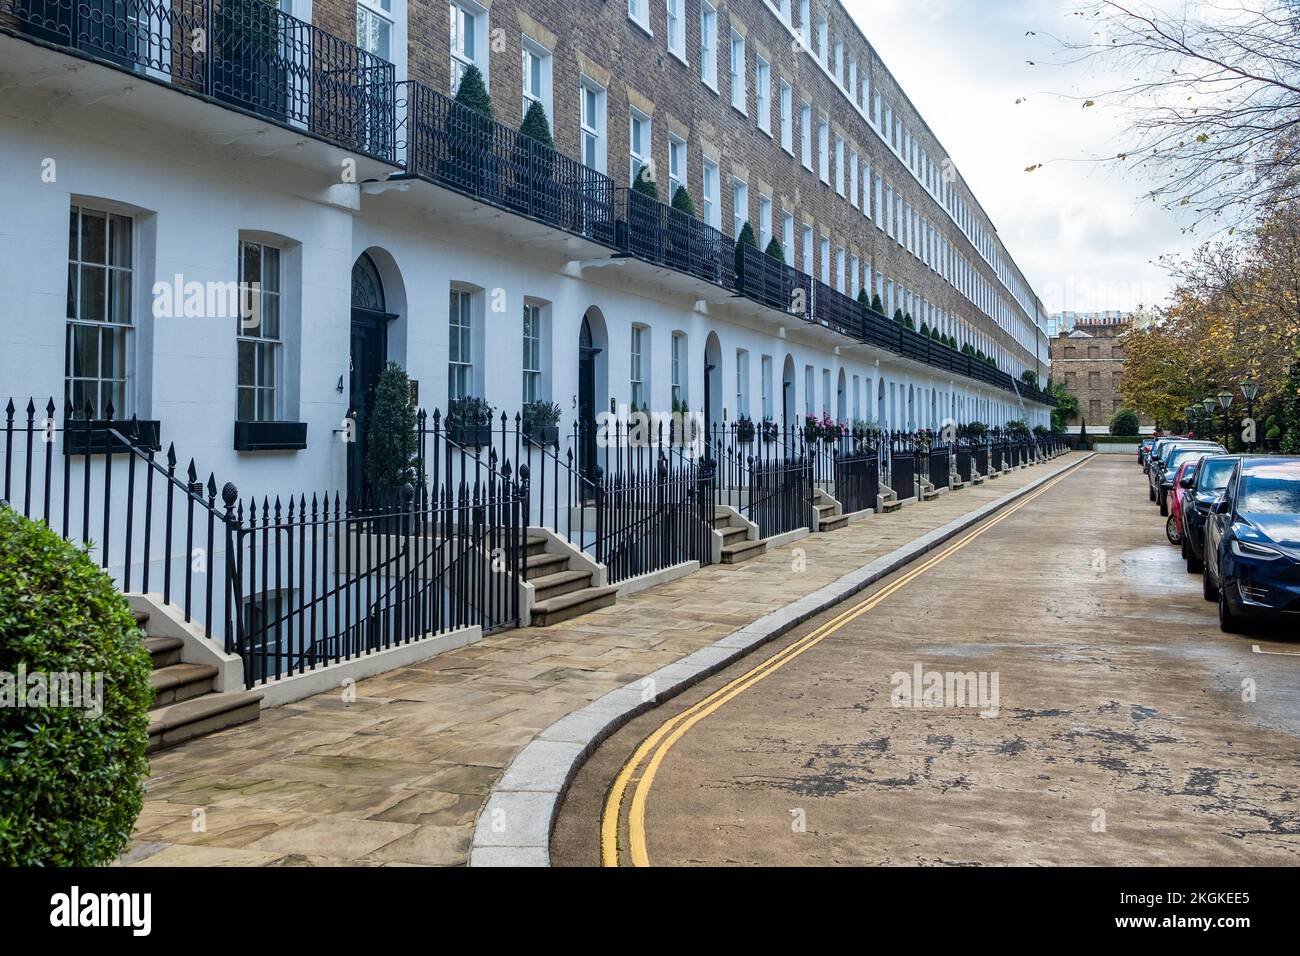 Terrassenförmige Straße mit wunderschönen georgianischen Häusern in Kensington - West London Stockfoto